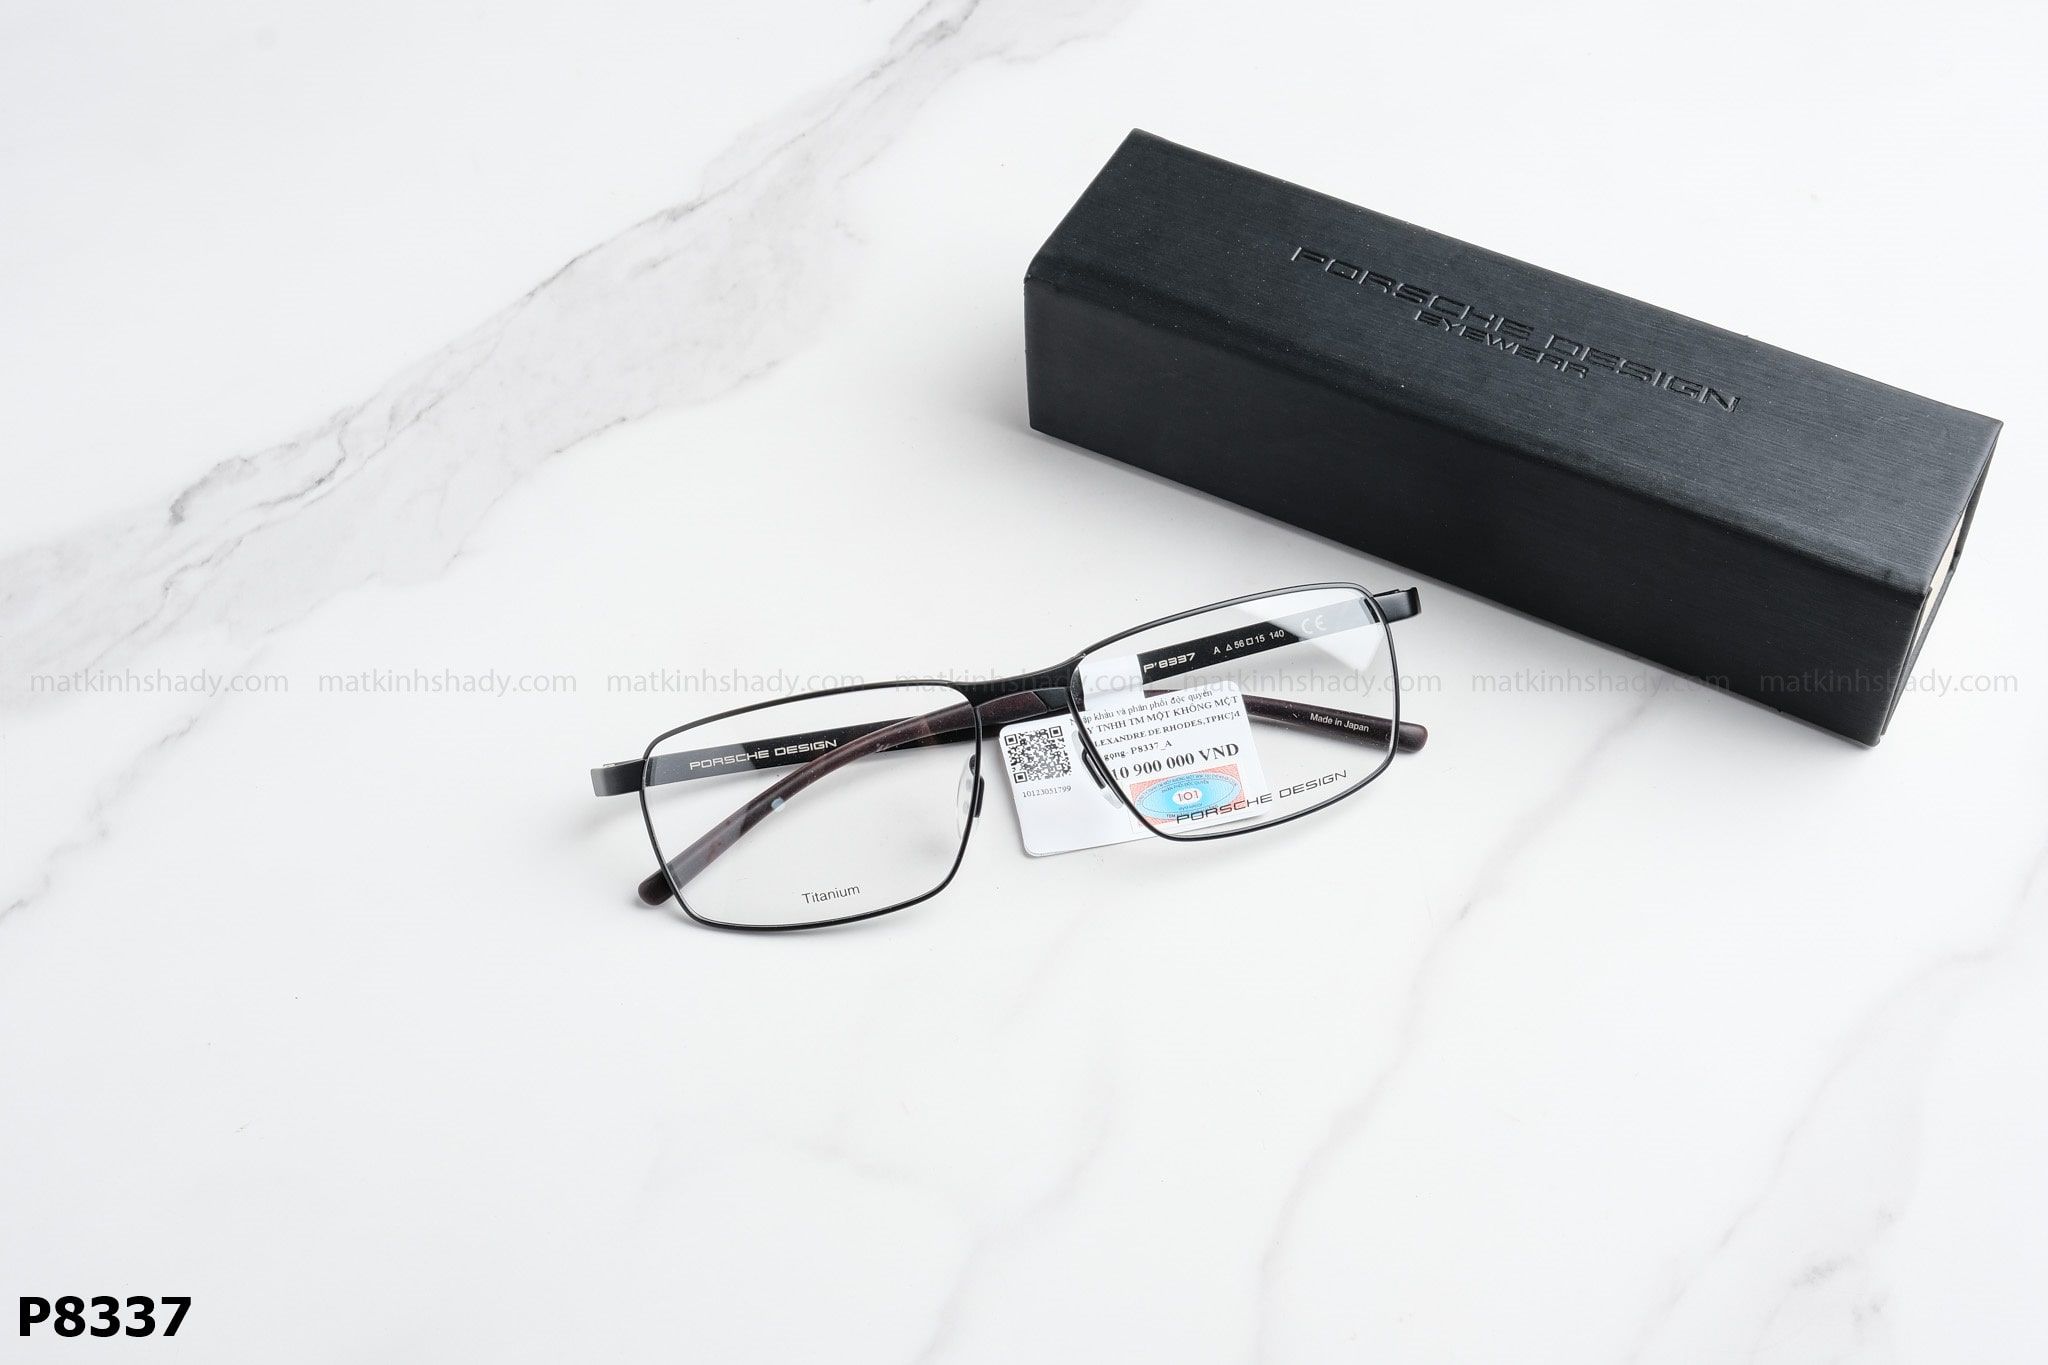  Porsche Design Eyewear - Glasses - P8337 